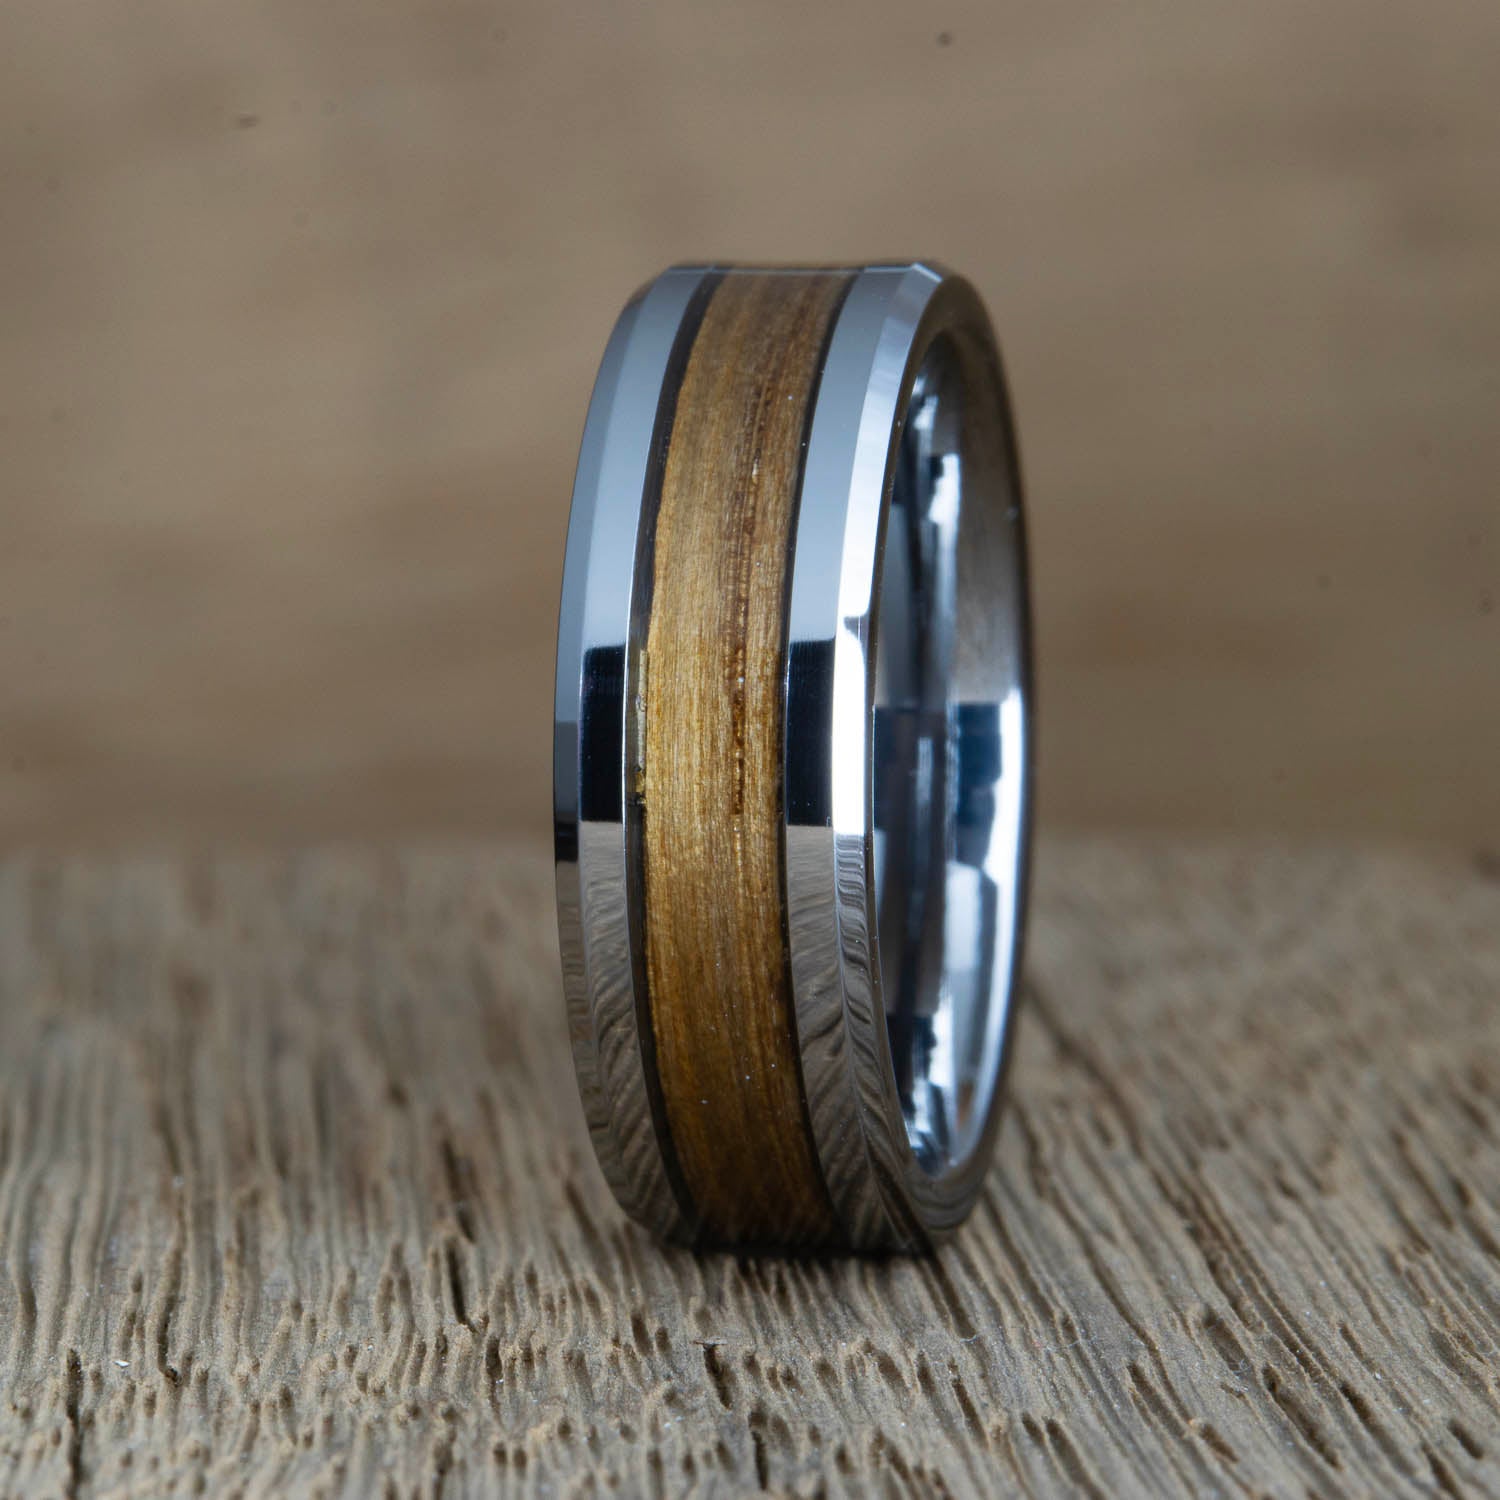 "The Royal" Crown Royal whiskey barrel wood ring